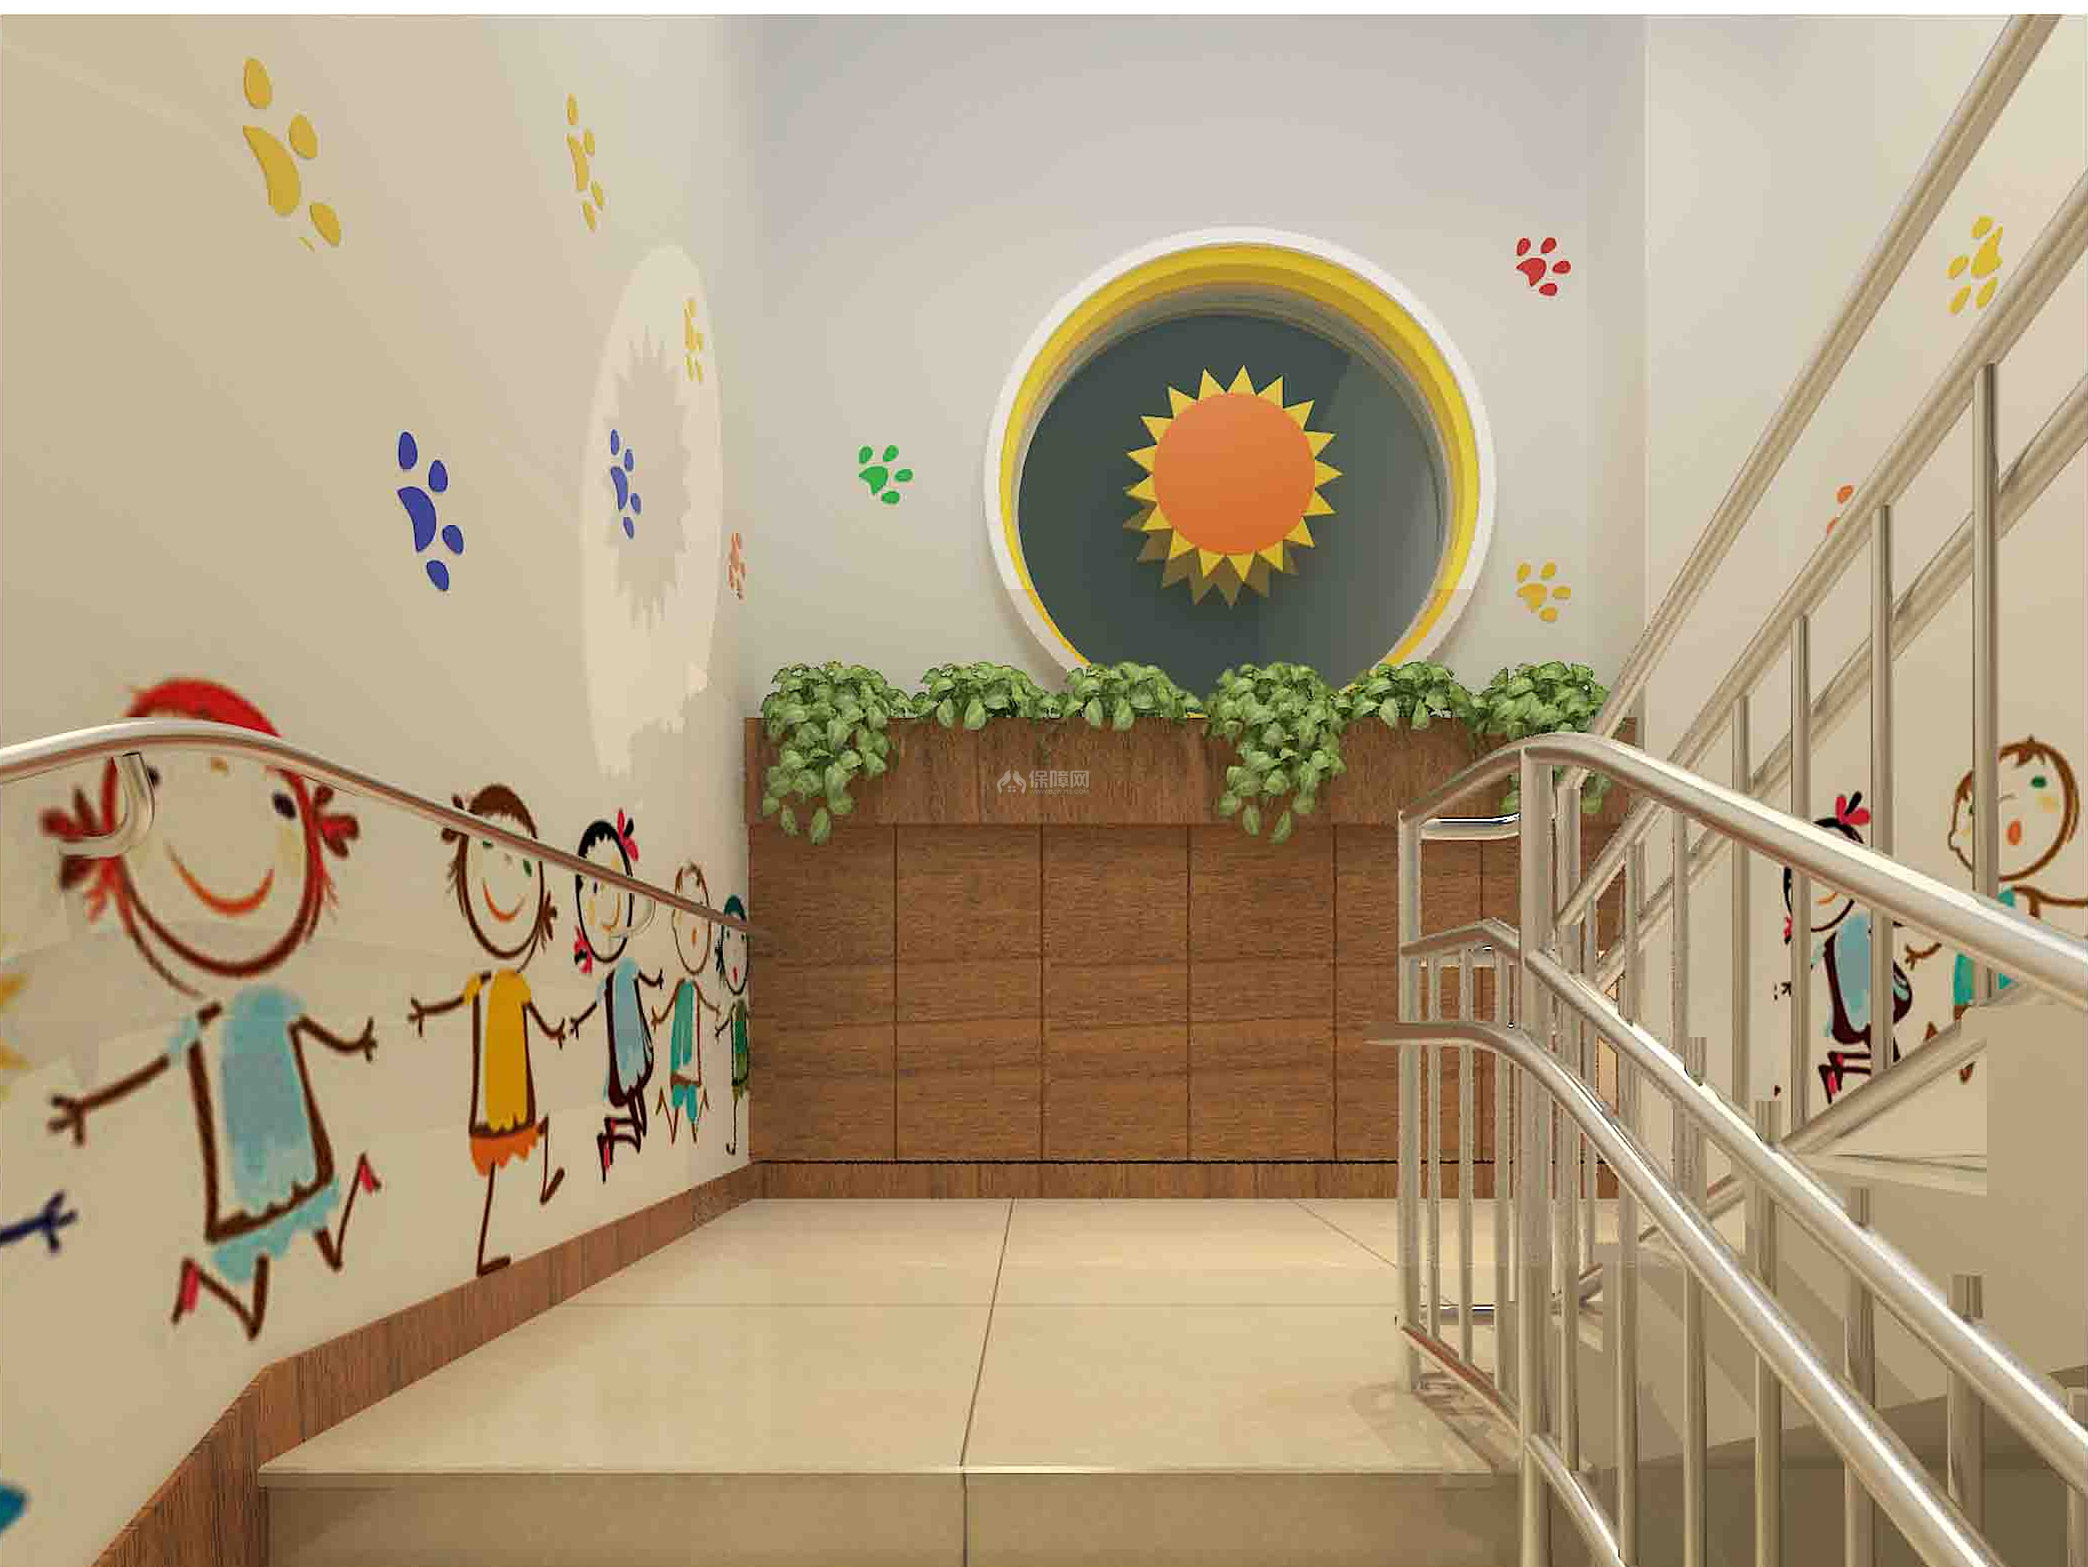 智慧泉幼儿园之楼梯口装修设计效果图